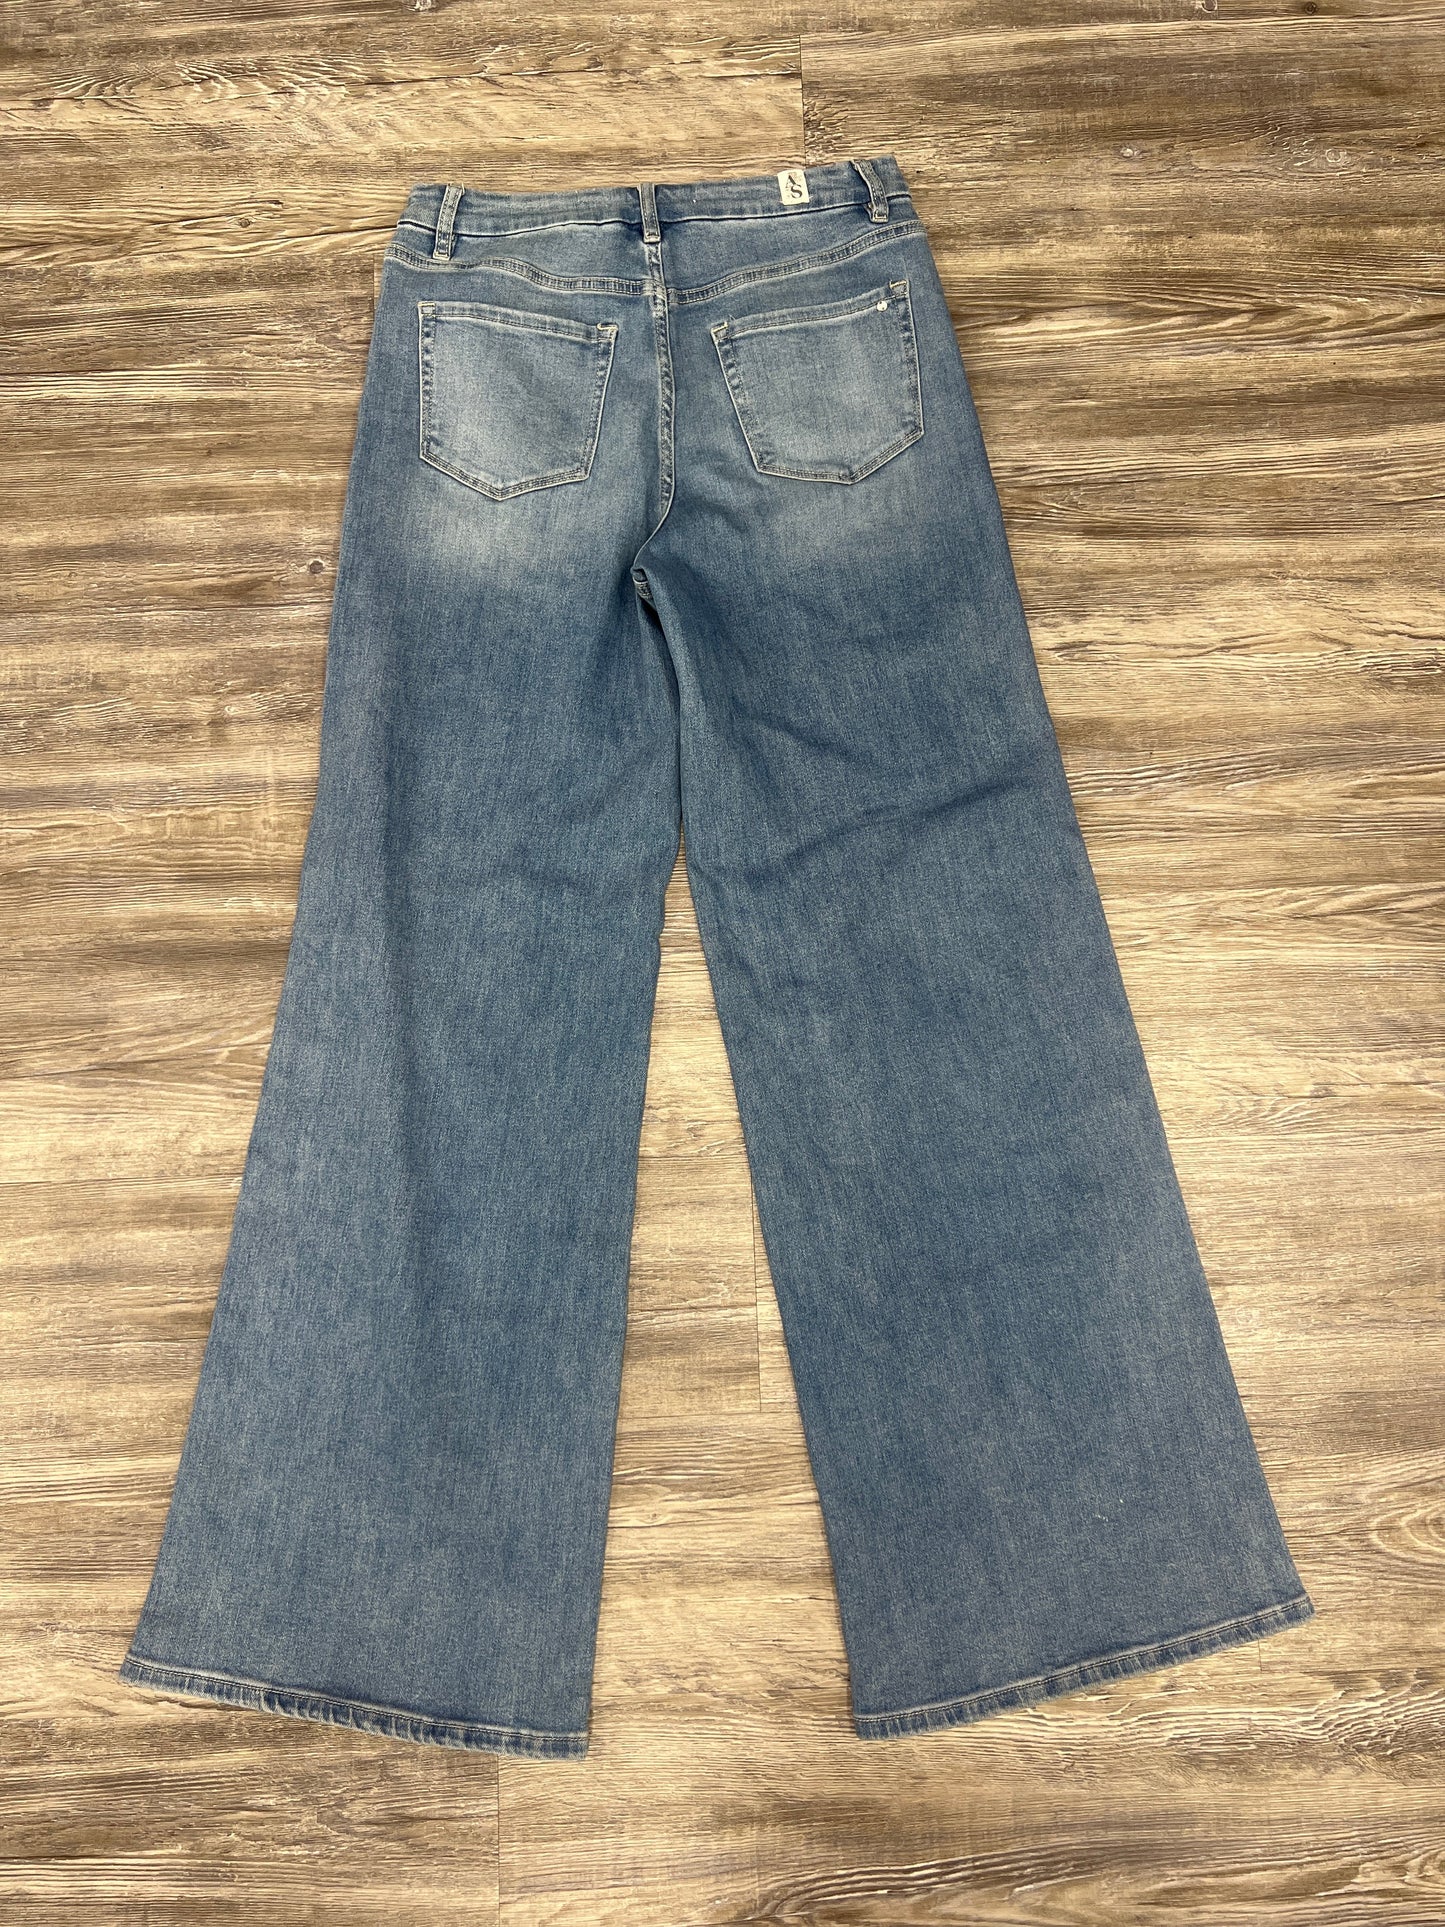 Blue Denim Jeans Flared Altard State, Size 8